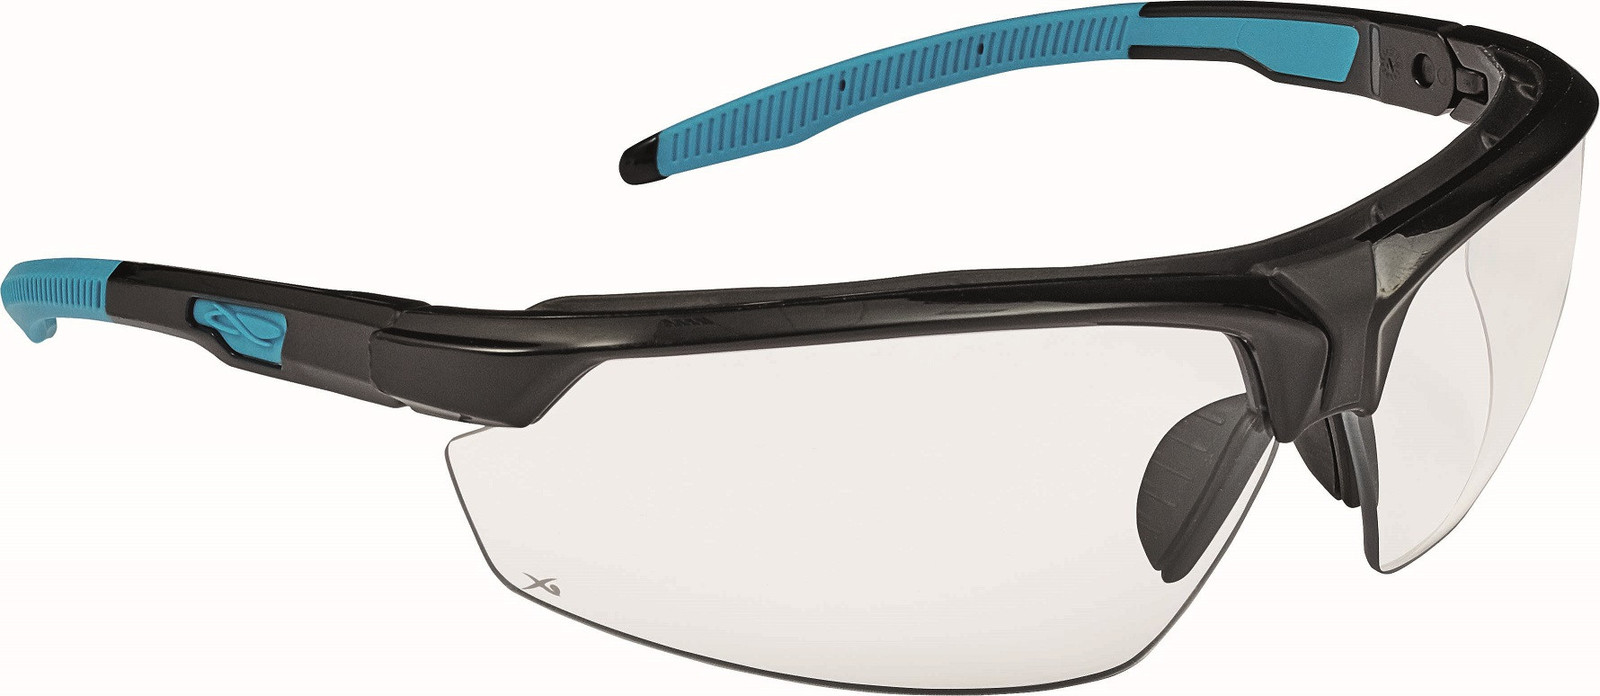 Ochranné okuliare Lyss - farba: číra